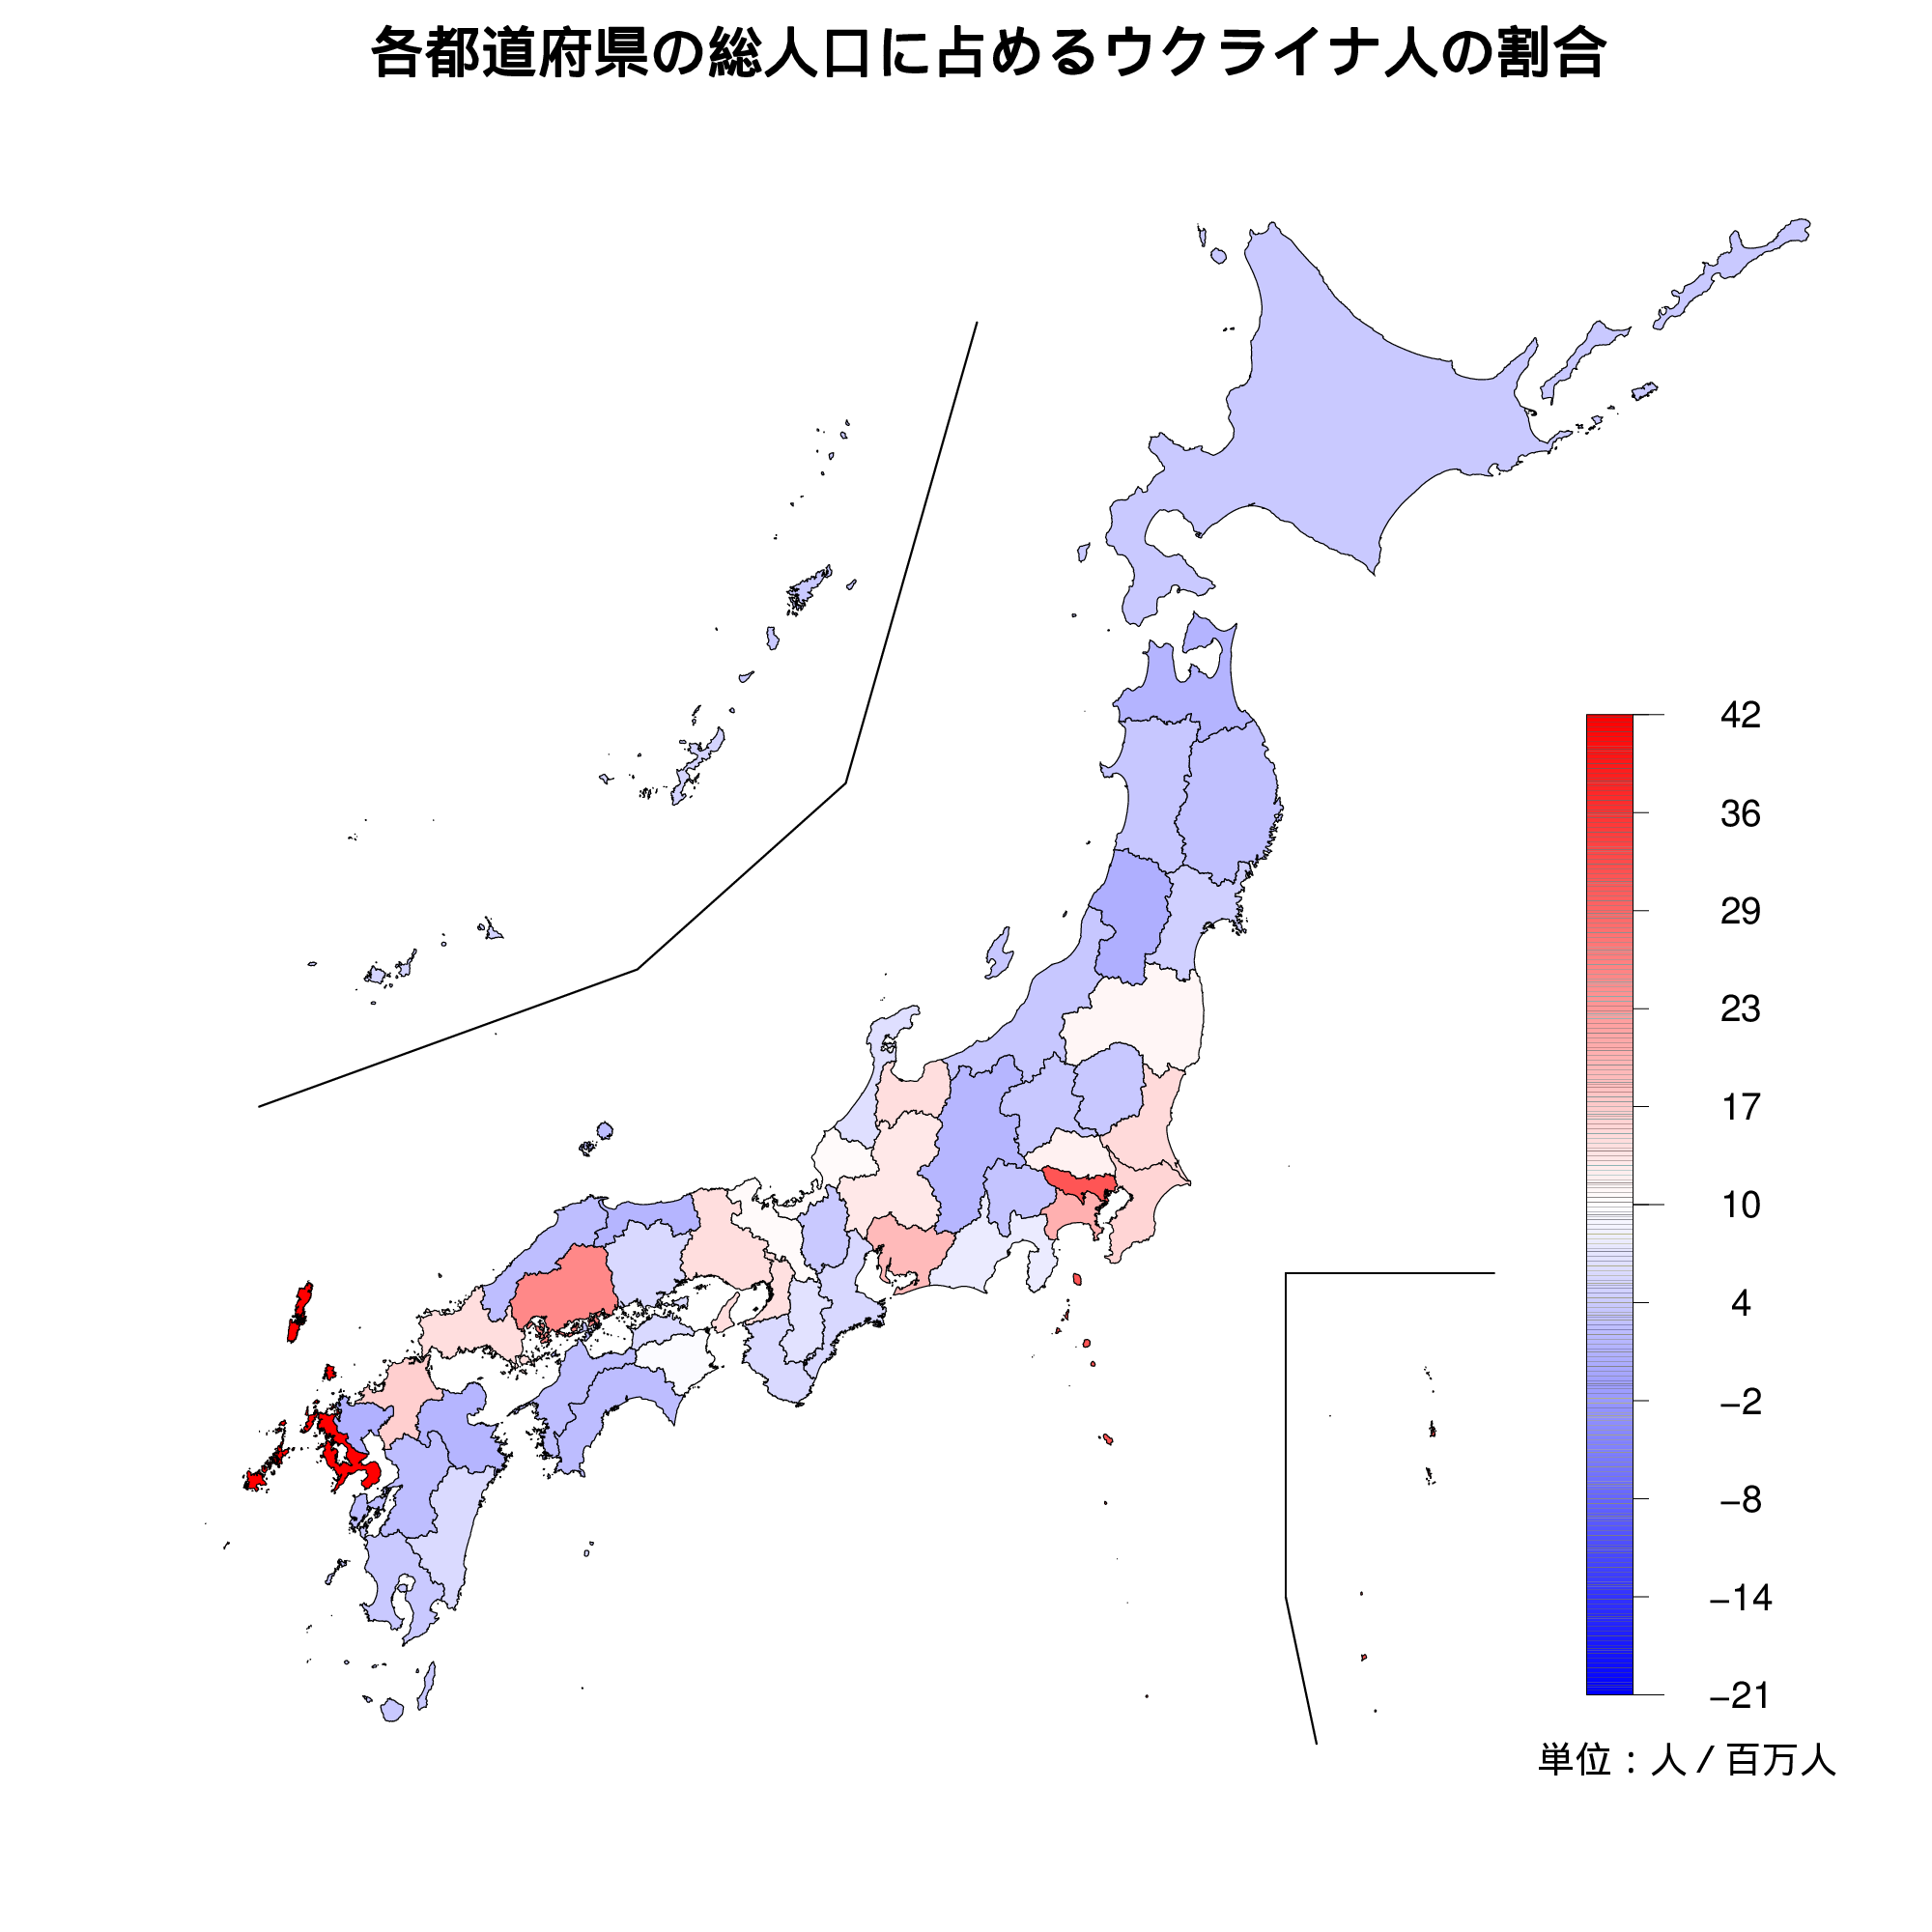 人口 ウクライナ の ウクライナの人口を日本と比較すると？日本の何倍くらい？